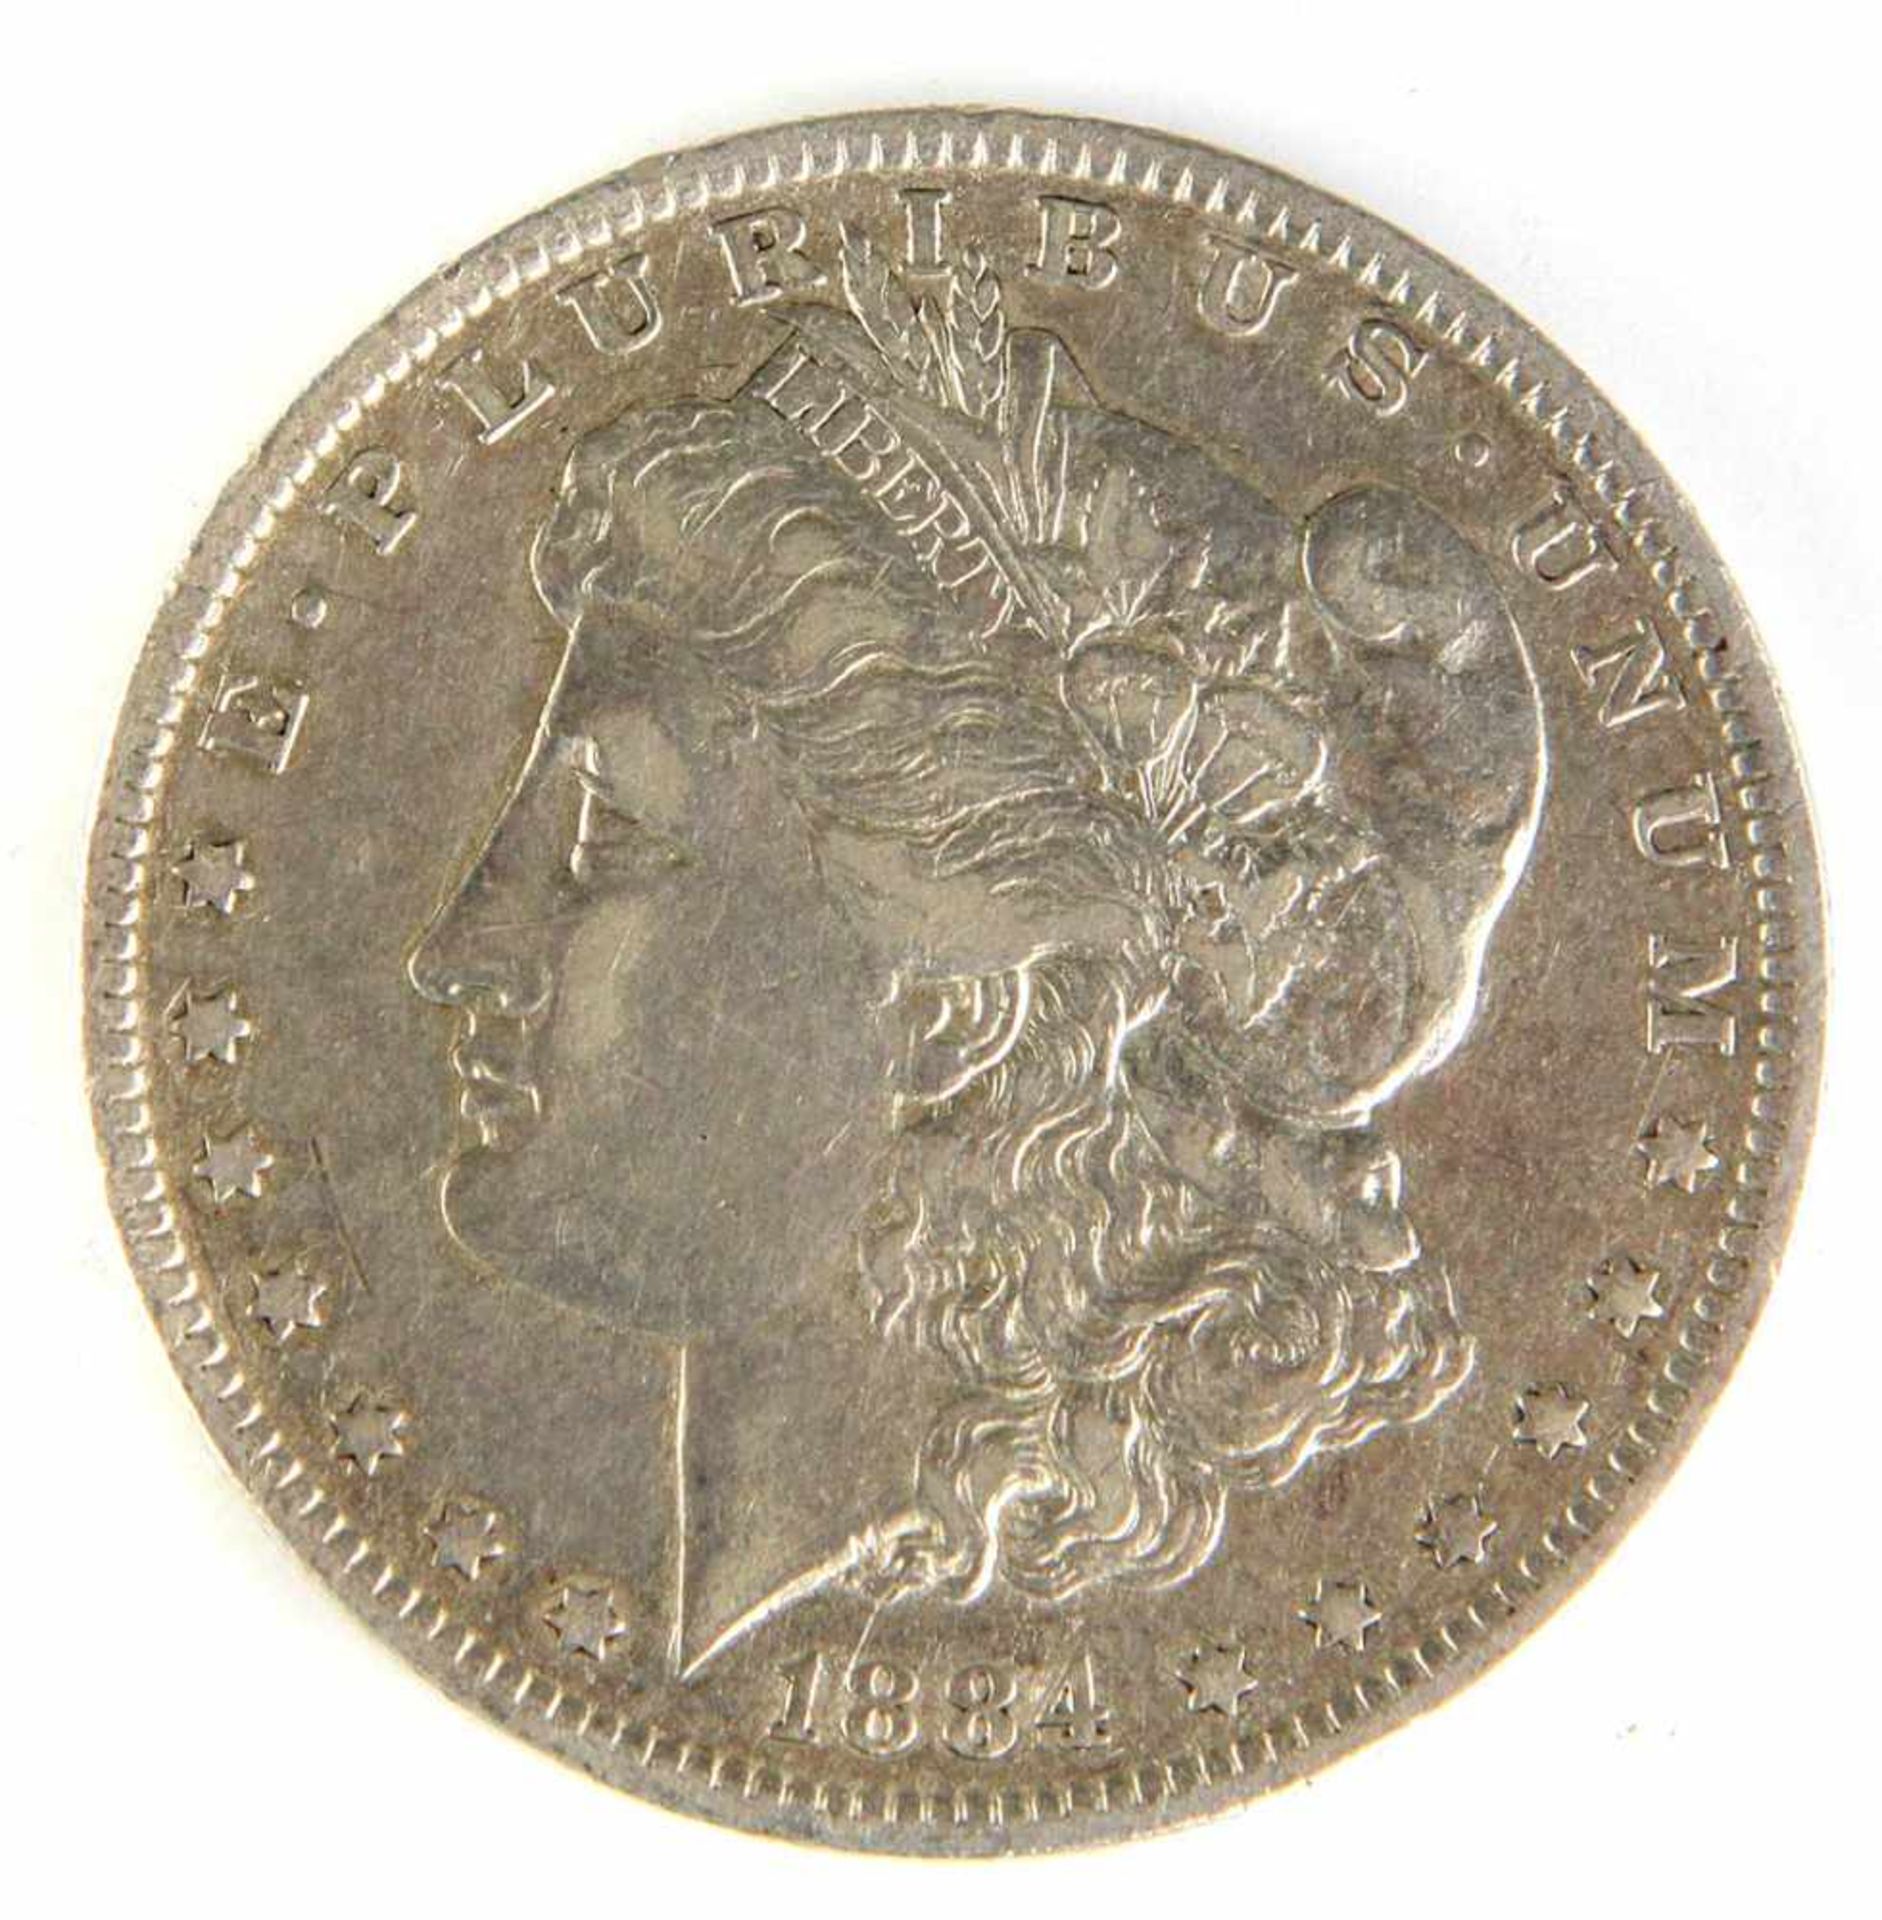 Morgan Dollar New Orleans 1884Silber, One Dollar 1884, Adler der in seinen Fängen einen